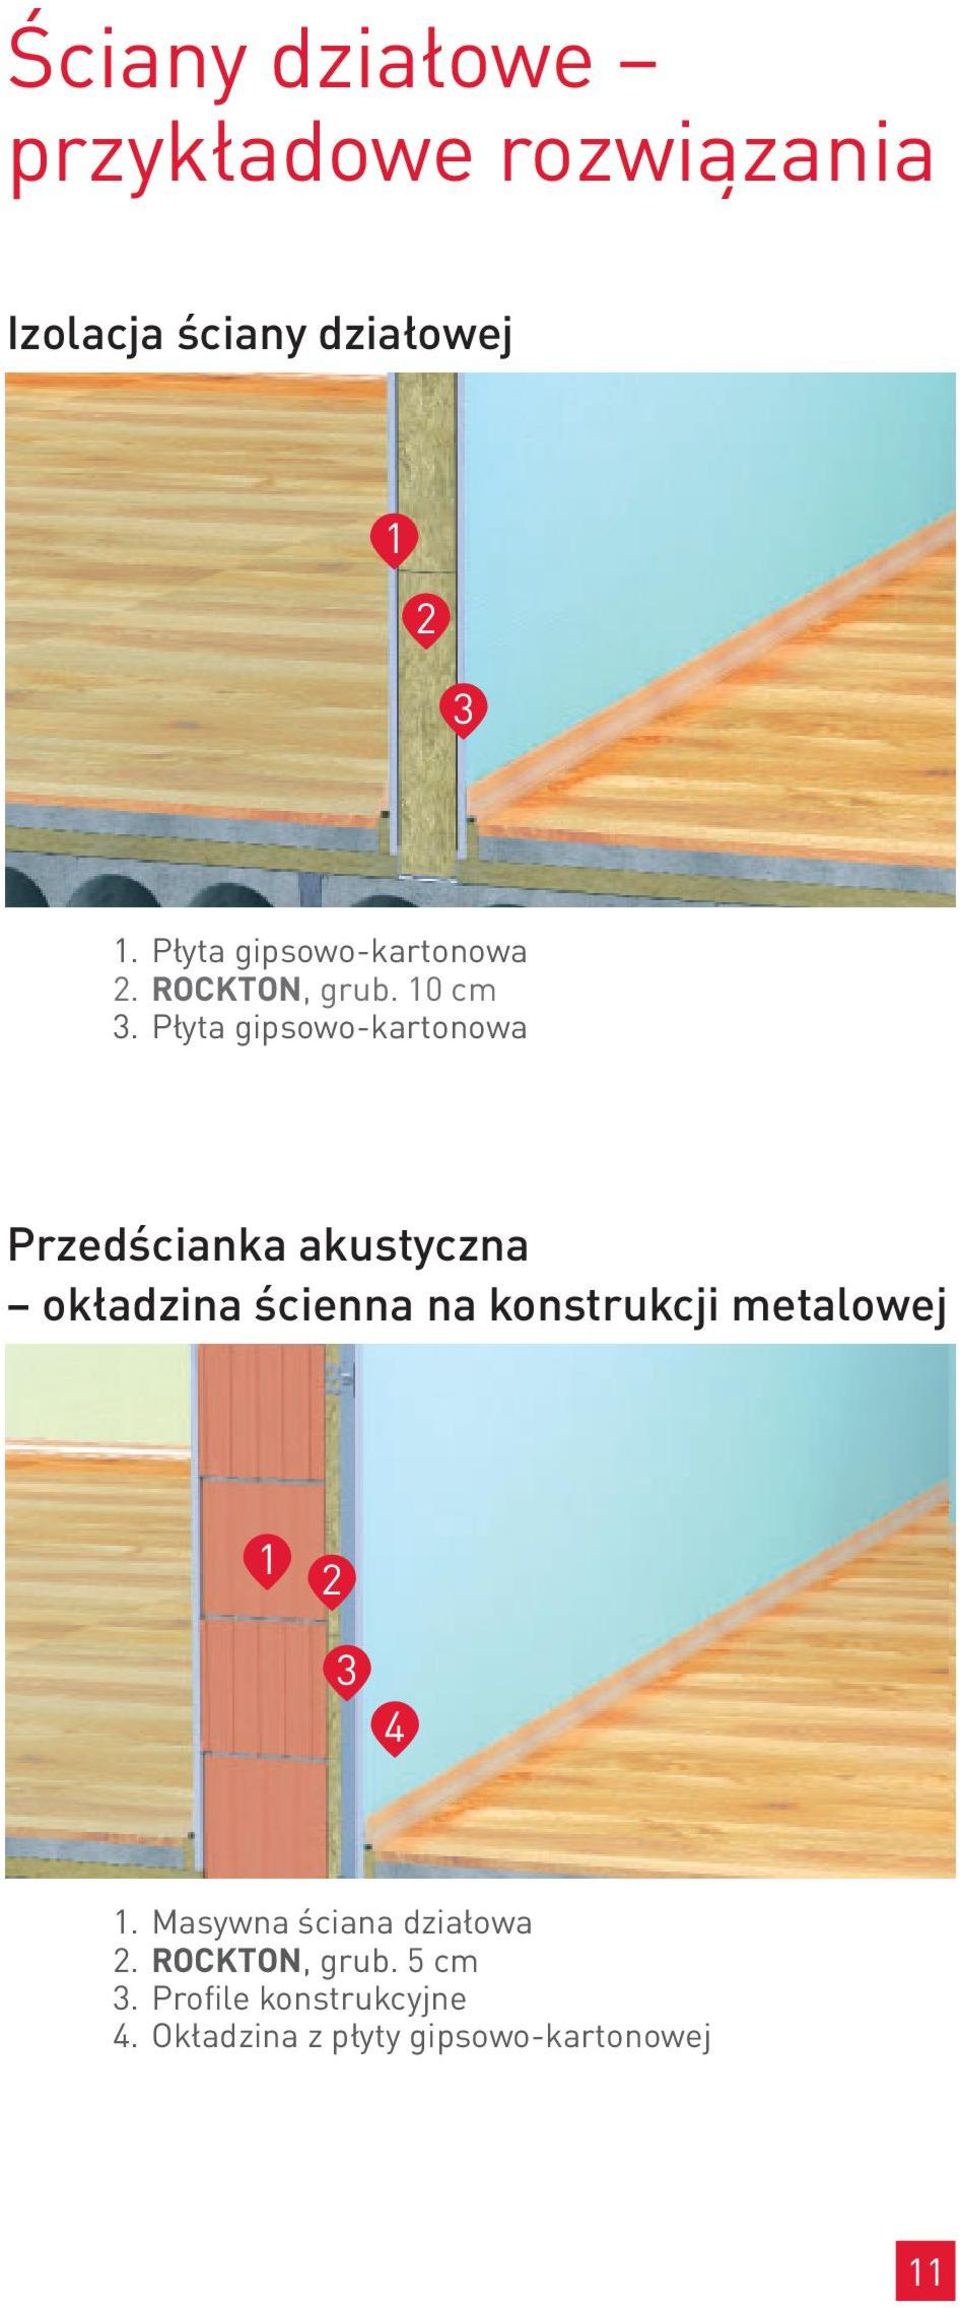 Płyta gipsowo-kartonowa Przedścianka akustyczna okładzina ścienna na konstrukcji